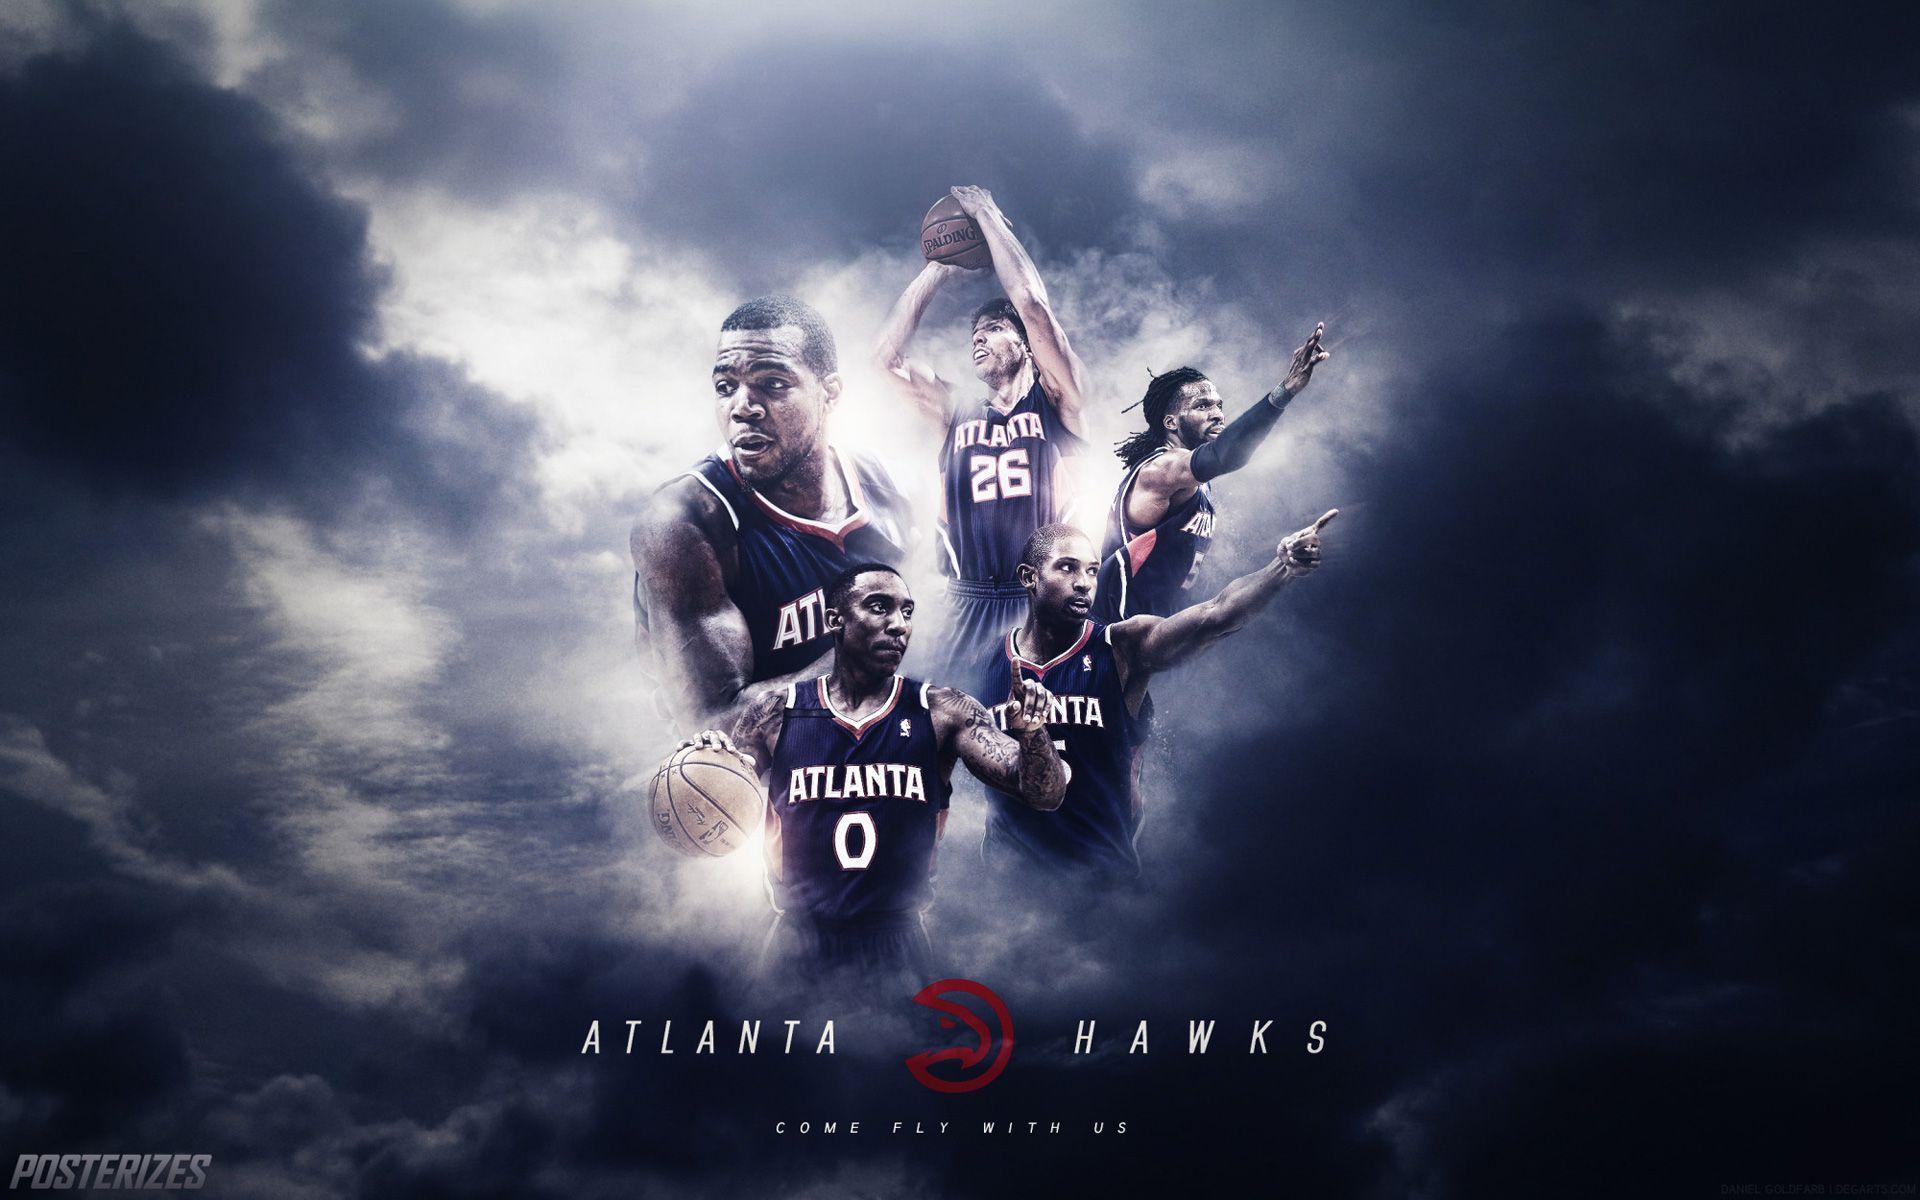 Atlanta Hawks on X: You need @zoom_us backgrounds? We've got you